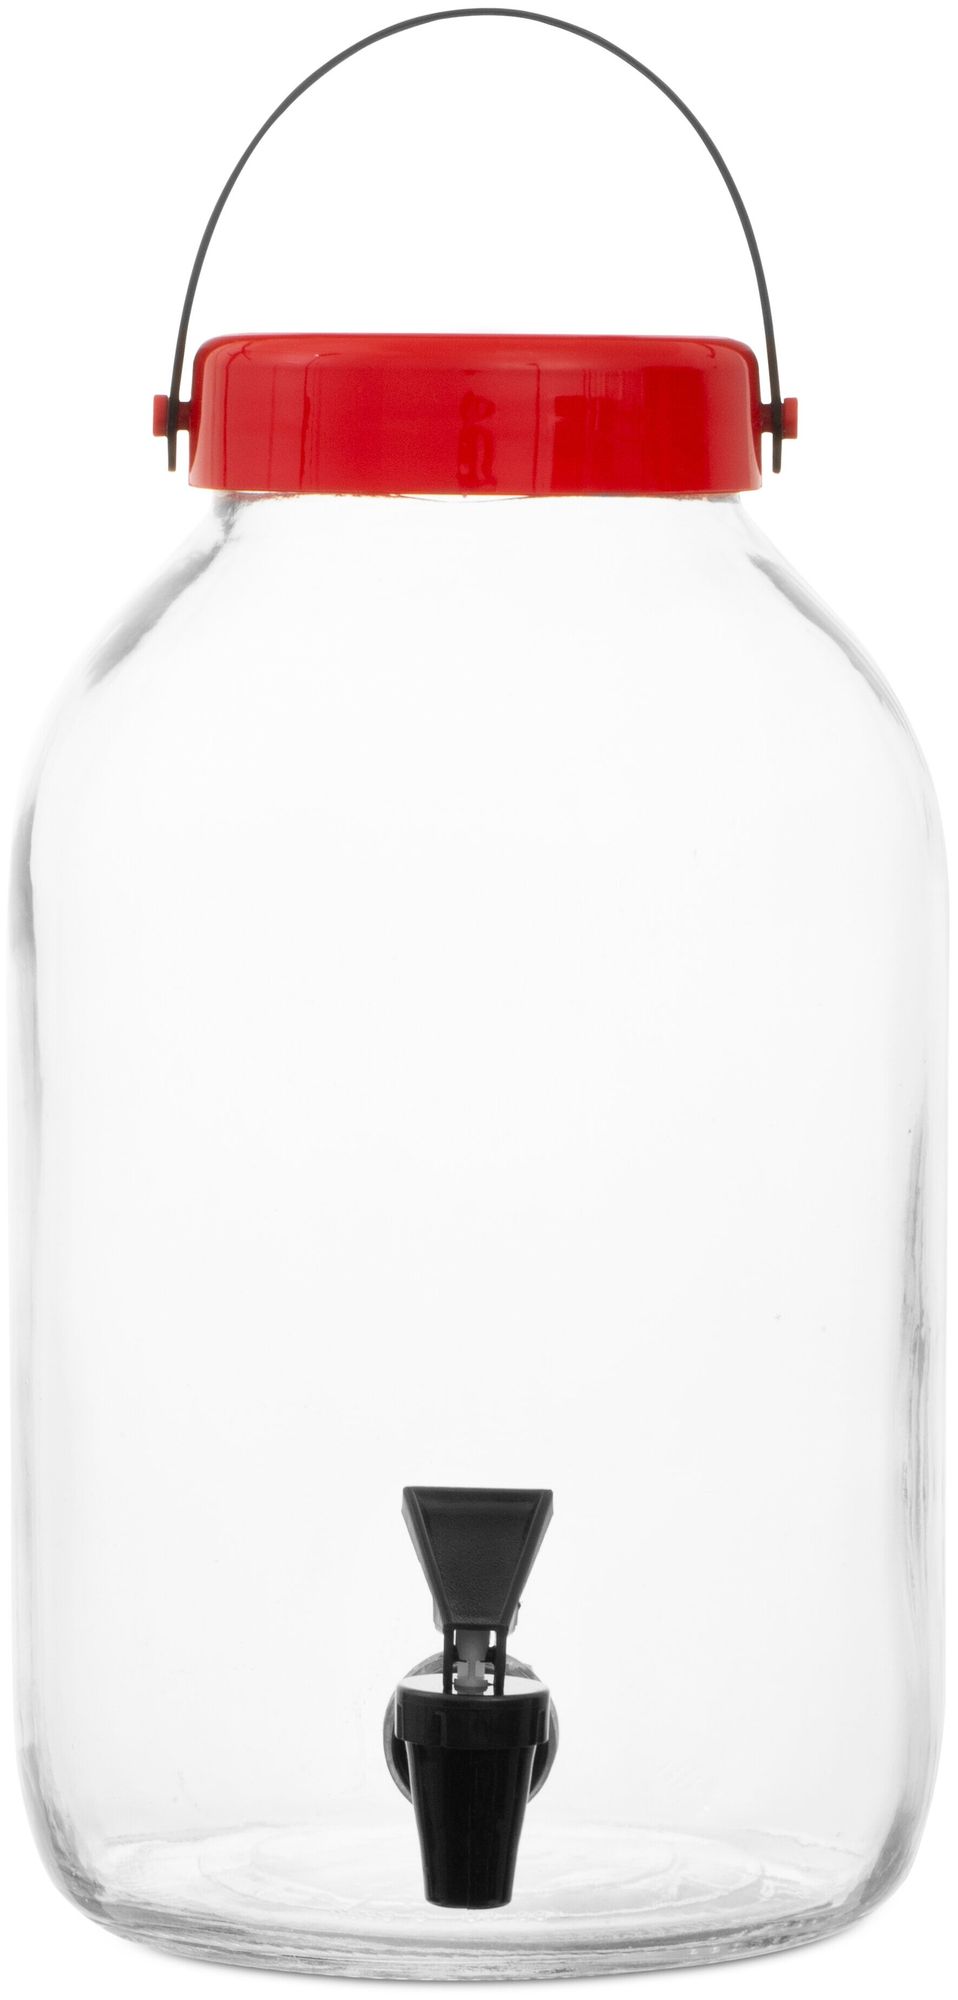 Диспенсер для напитков MACRO 5л RENGA RE131002 диспенсер для напитков на подставке yorkshire 4 литра